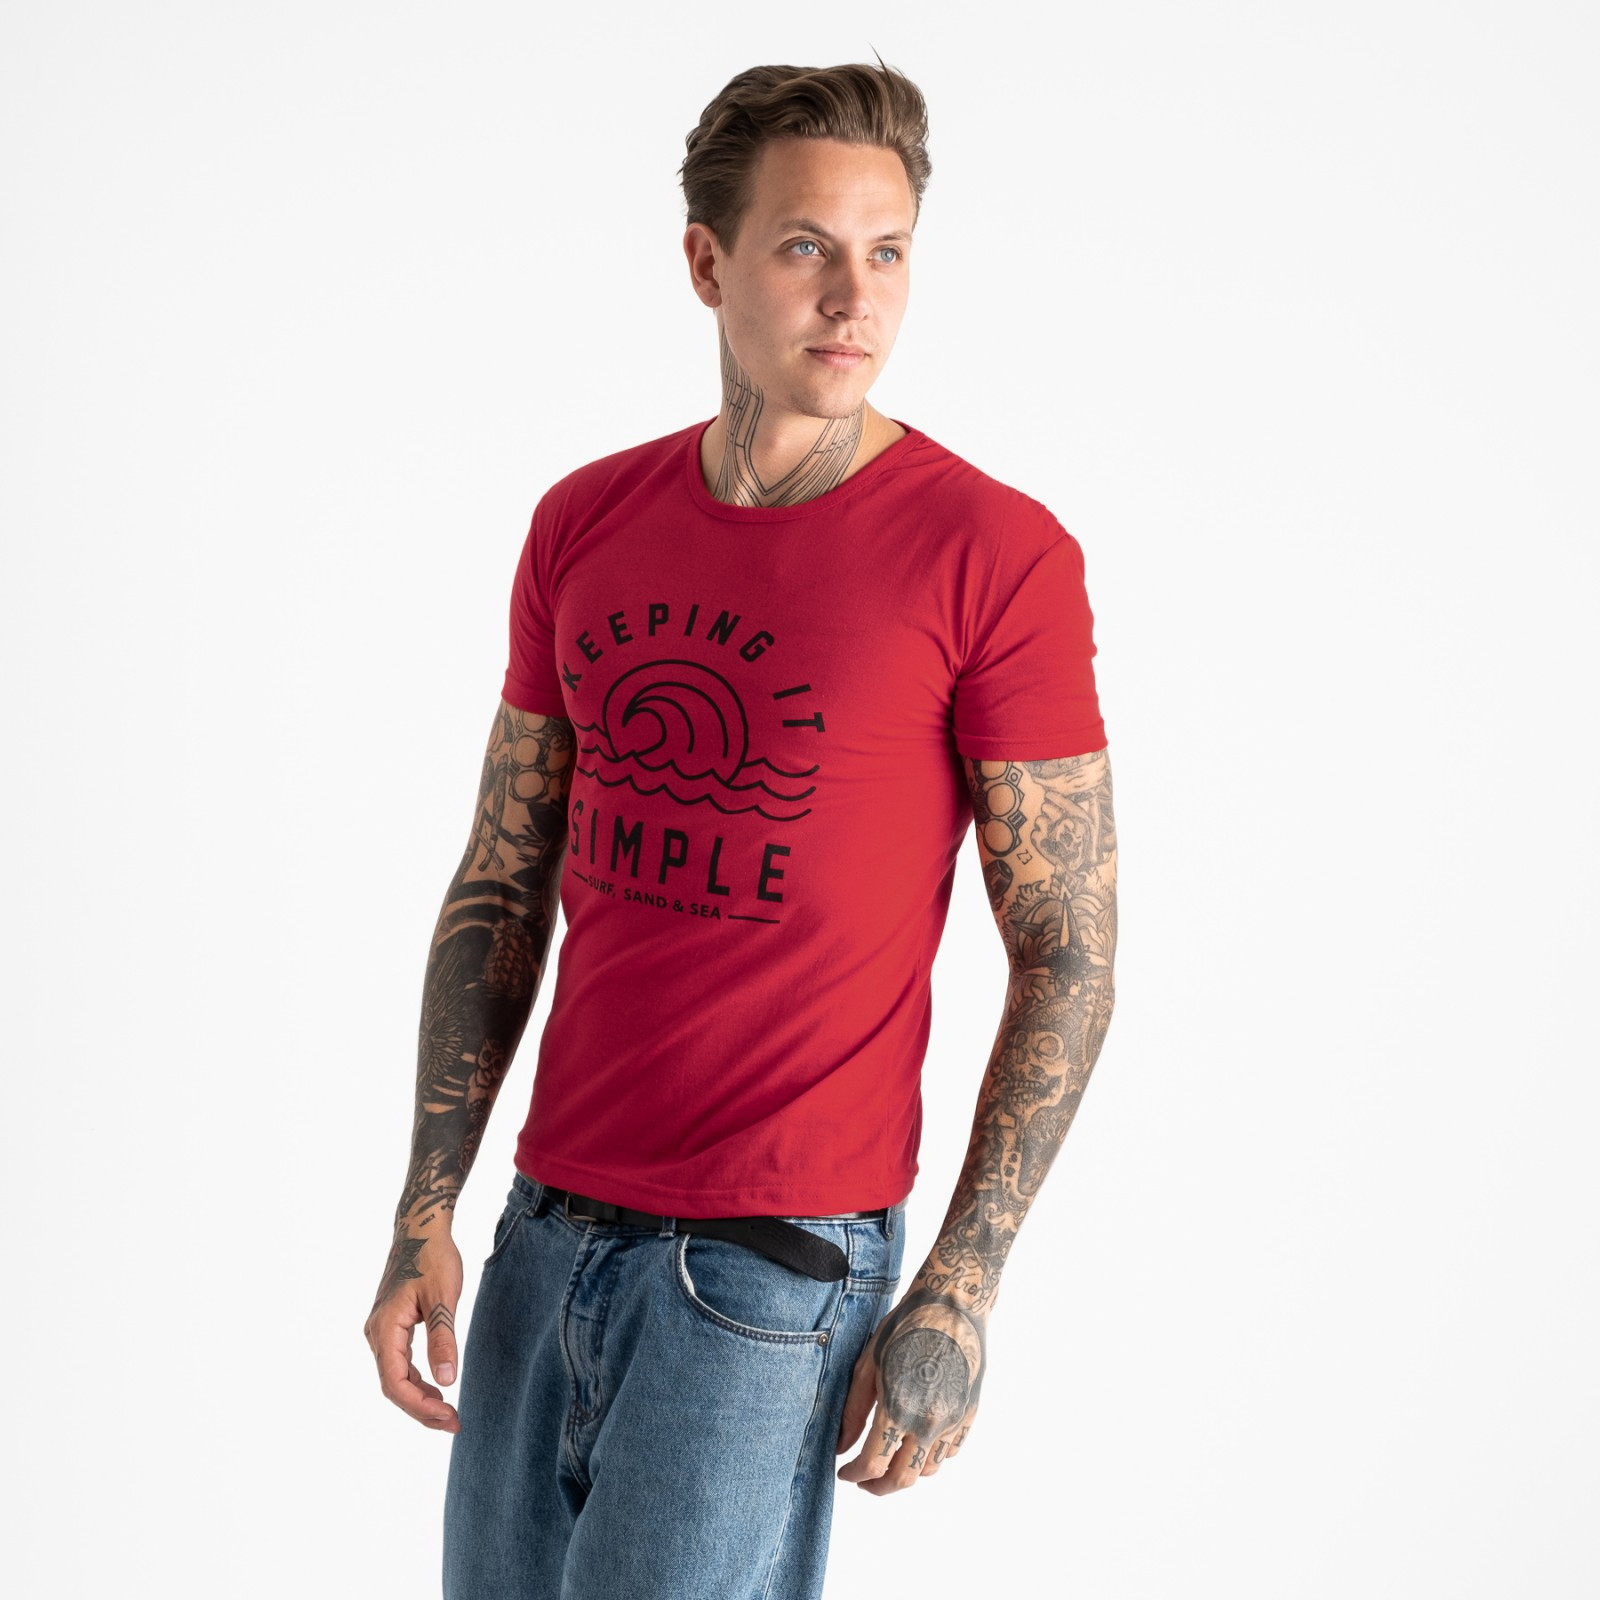 2605-3 красная футболка мужская с принтом (4 ед. размеры: M.L.XL.2XL)